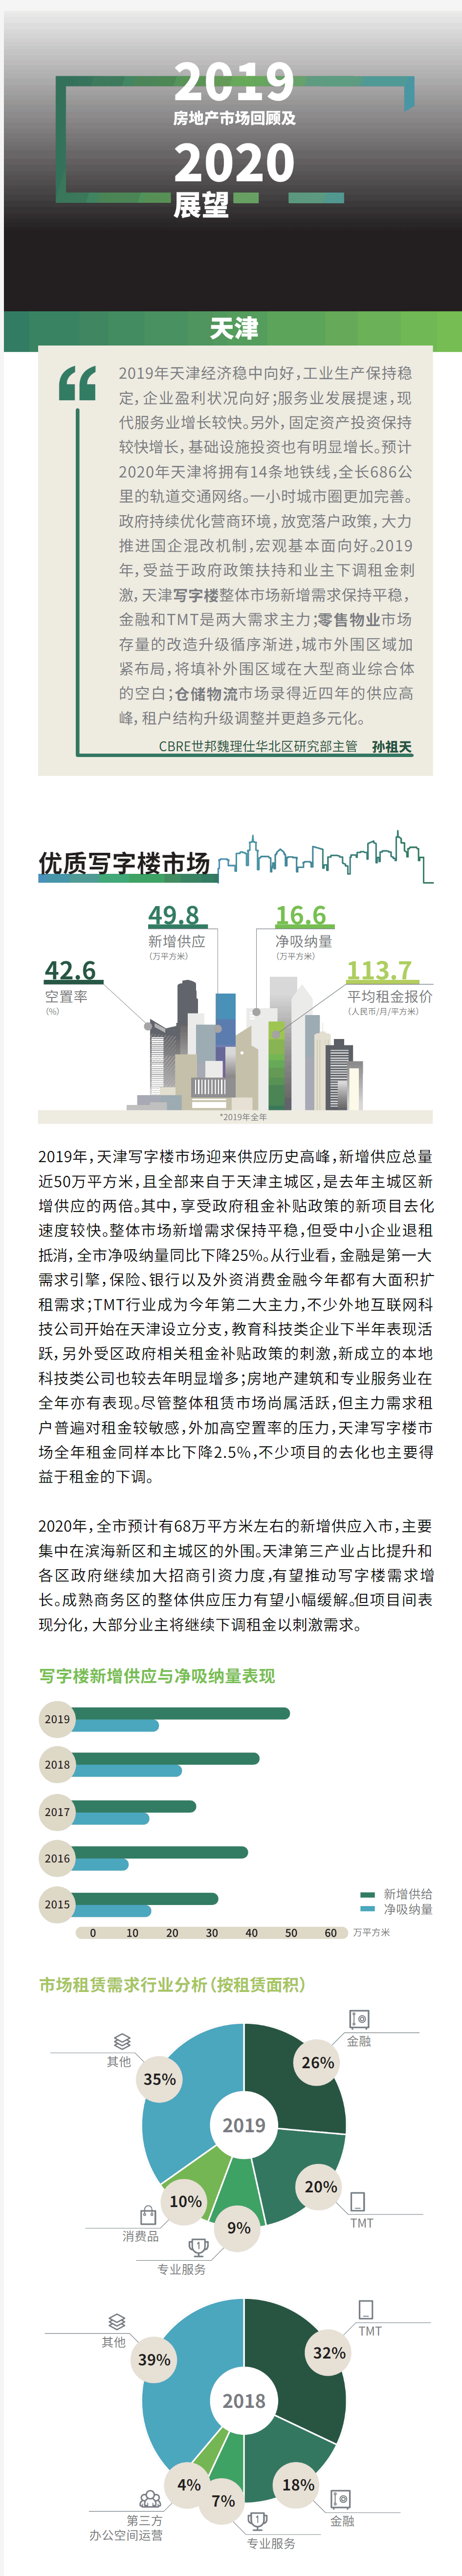 2019年天津房地产市场回顾及2020年展望